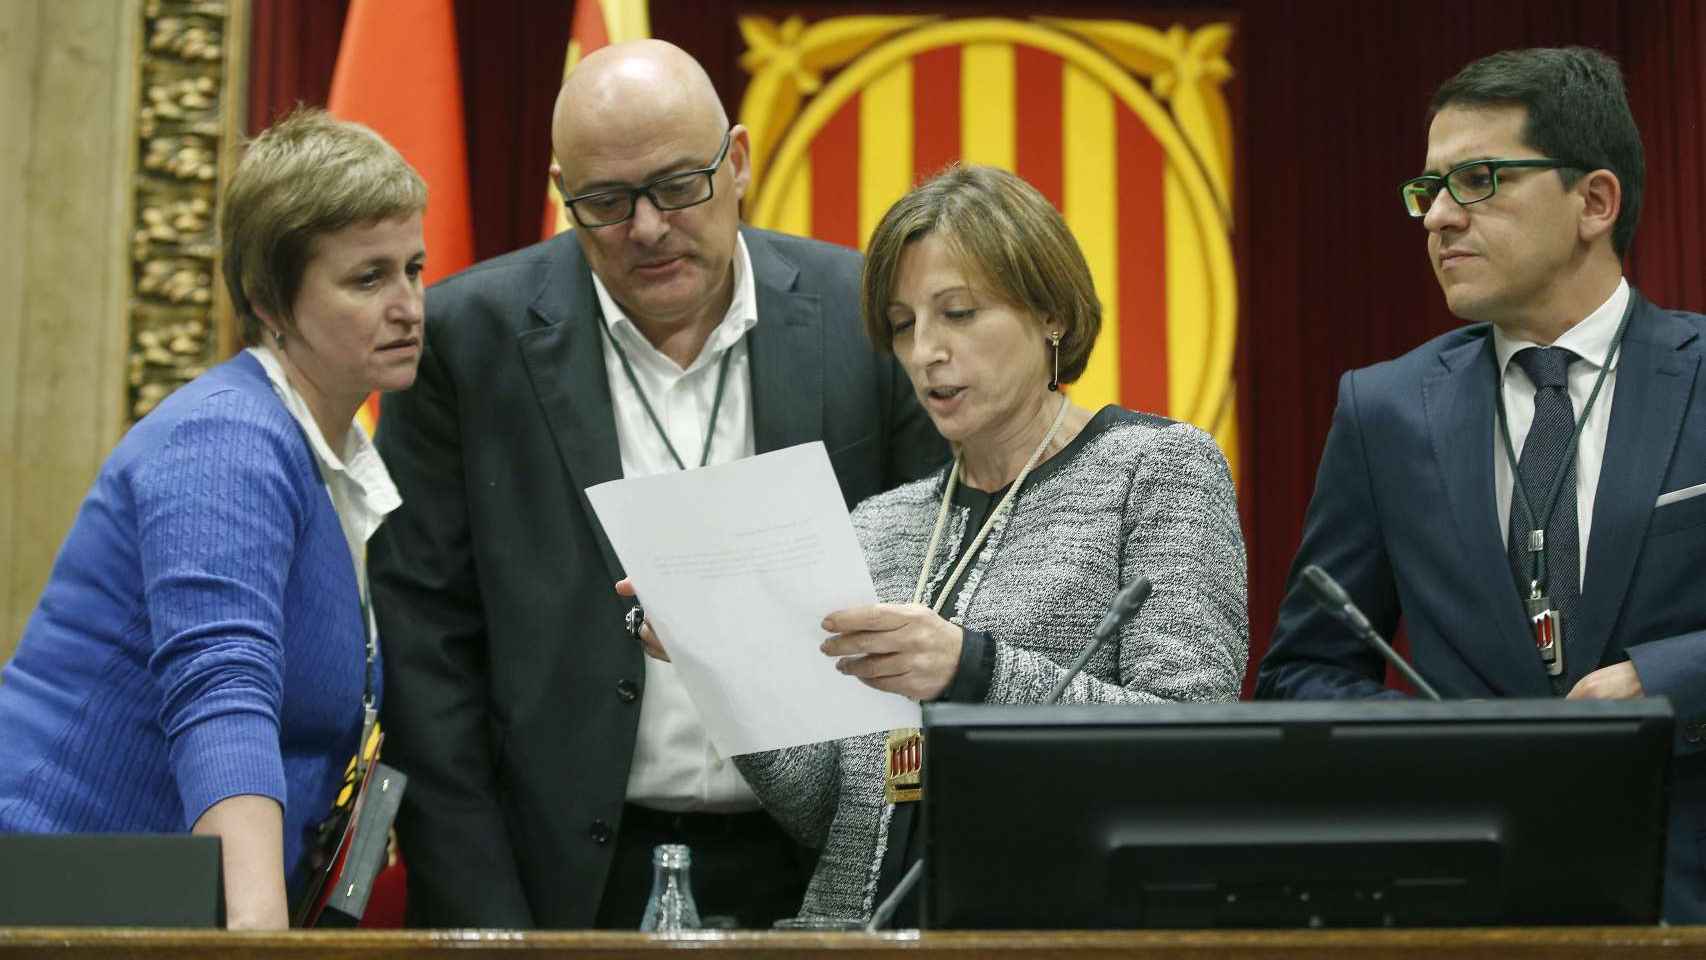 La presidenta del Parlament, Carme Forcadell, y la secretaria de la Mesa, Anna Simó (JxS) (i), el vicepresidente primero, Lluís Corominas (2i), y el vicepresidente segundo, J. M. Espejo-Saavedra (C's)